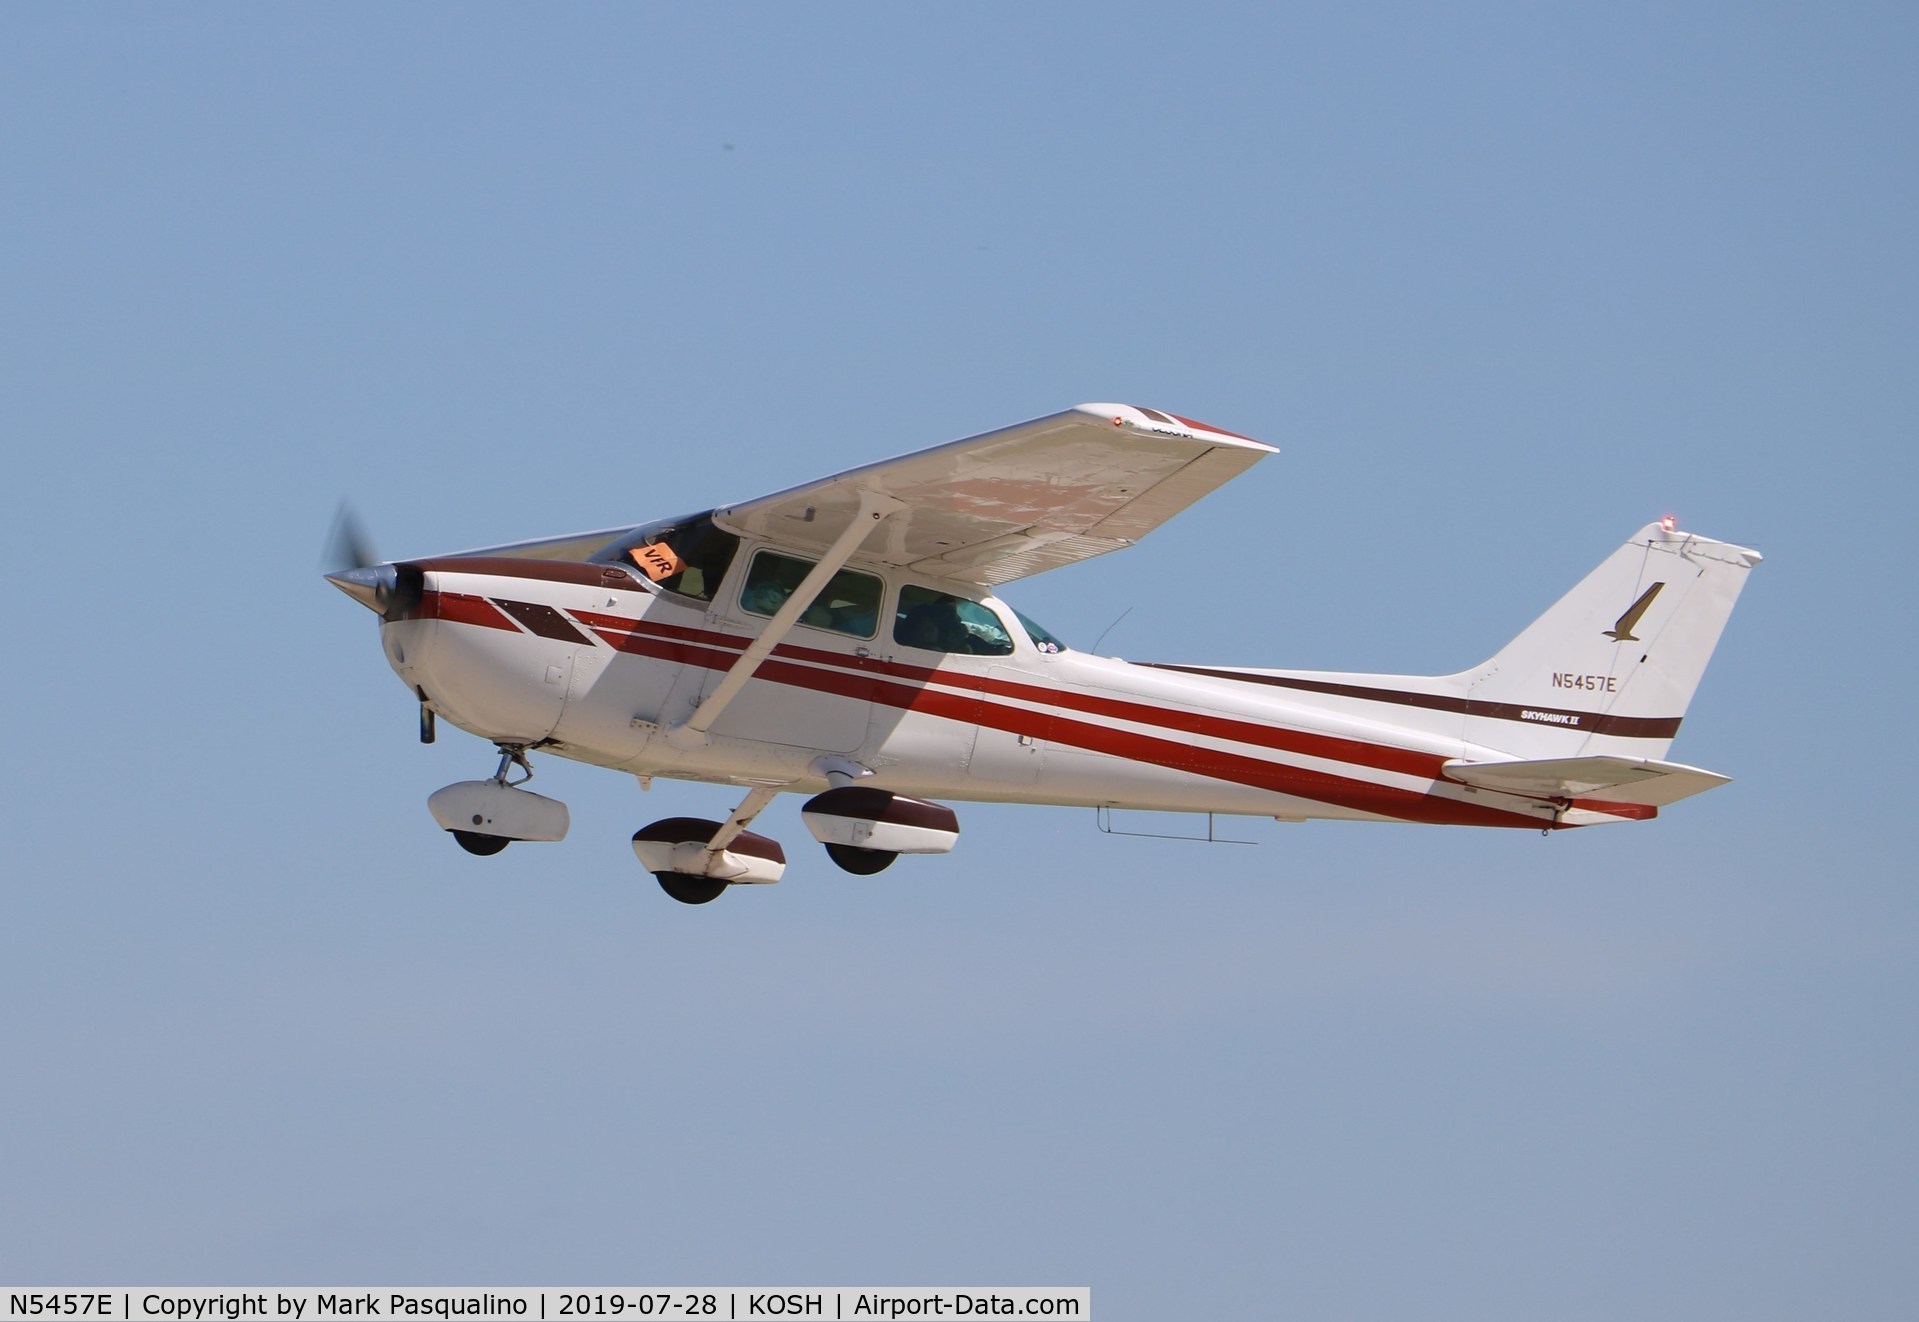 N5457E, 1978 Cessna 172N C/N 17271873, Cessna 172N